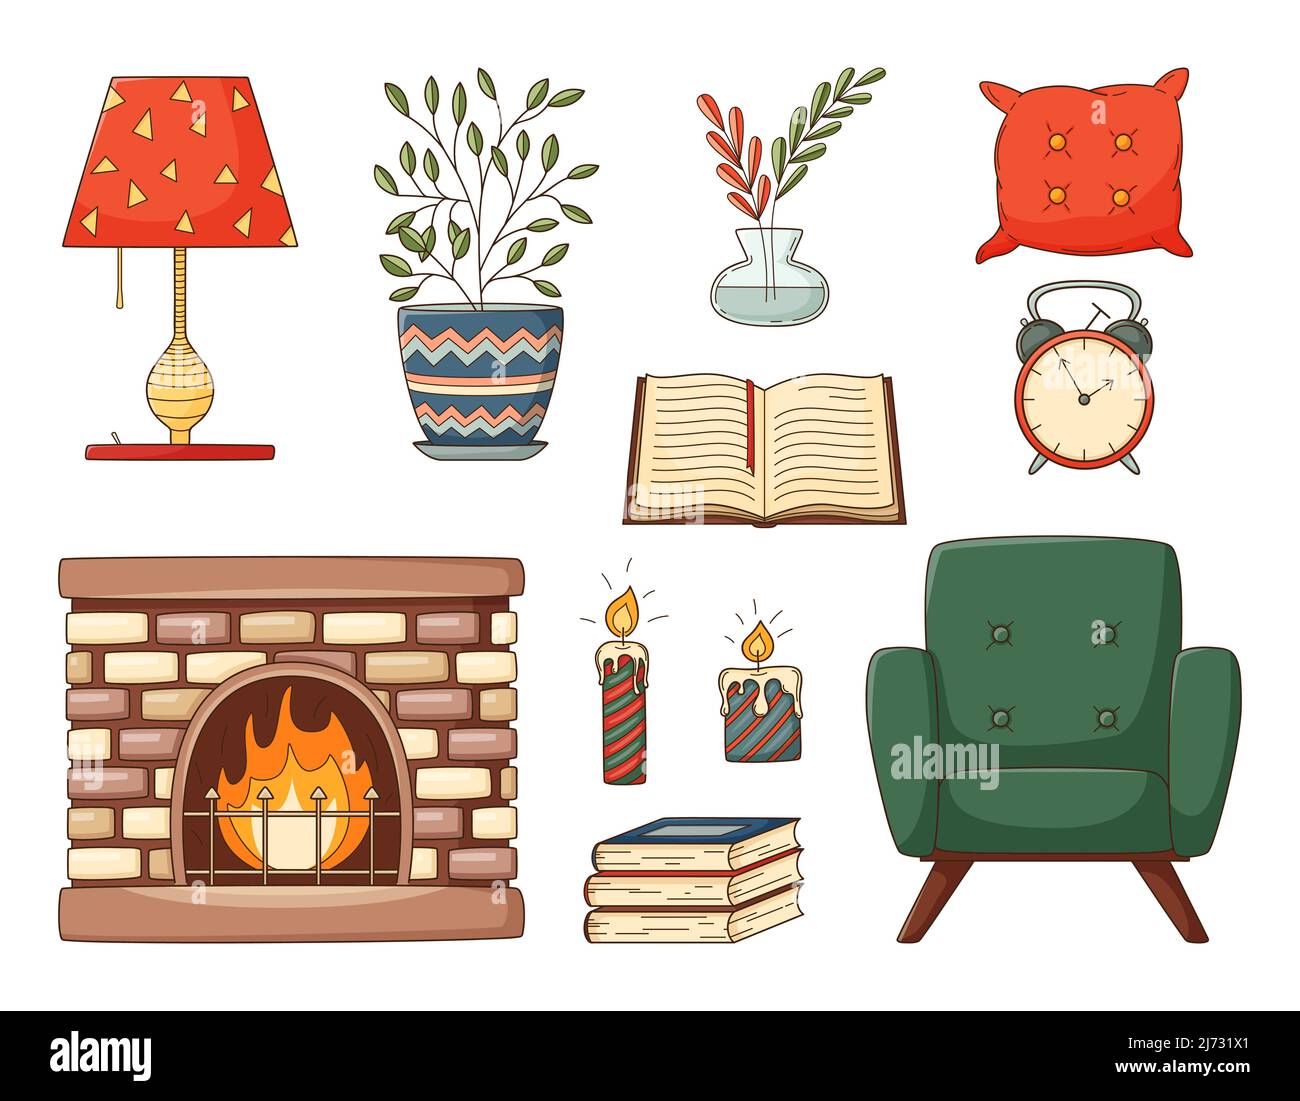 Una serie di doodles colorati. Arredamento casa, poltrona, libri, cuscino, camino, vaso, casalinga, sveglia, candele. Elementi decorativi con strok Illustrazione Vettoriale